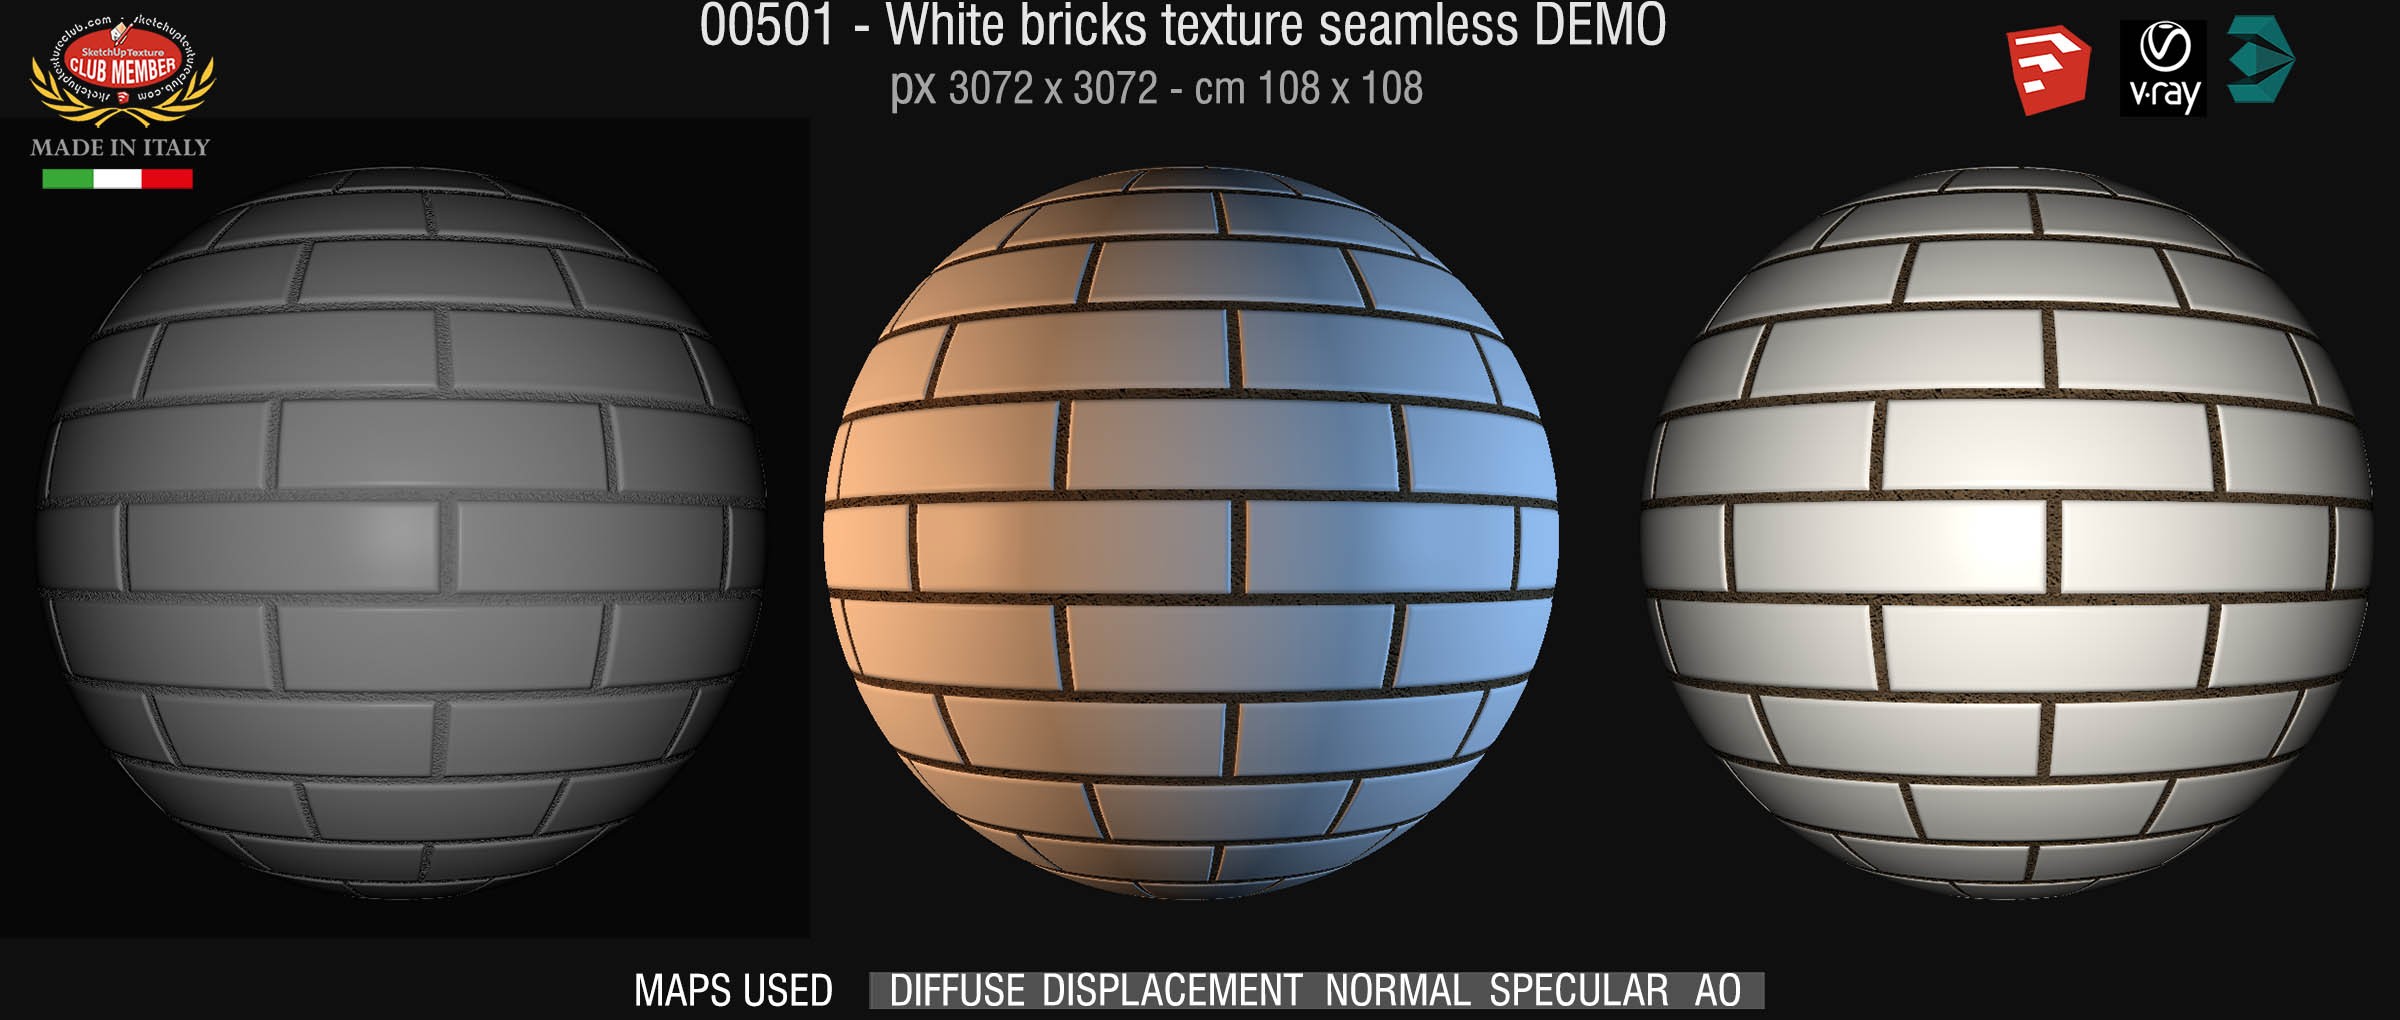 00501 White bricks texture seamless + maps DEMO